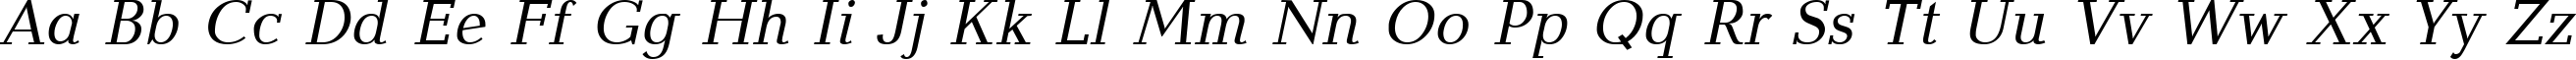 Пример написания английского алфавита шрифтом BalticaCTT Italic